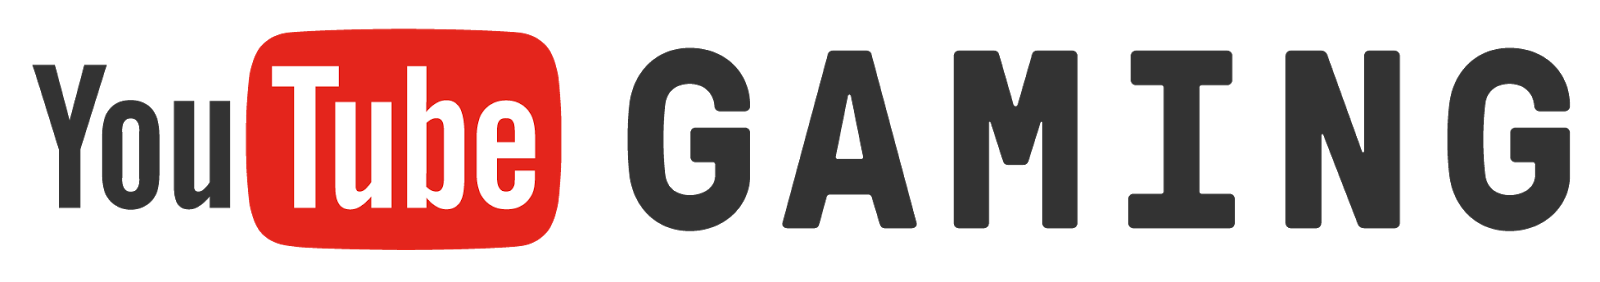 You Tube_ Gaming_ Logo PNG